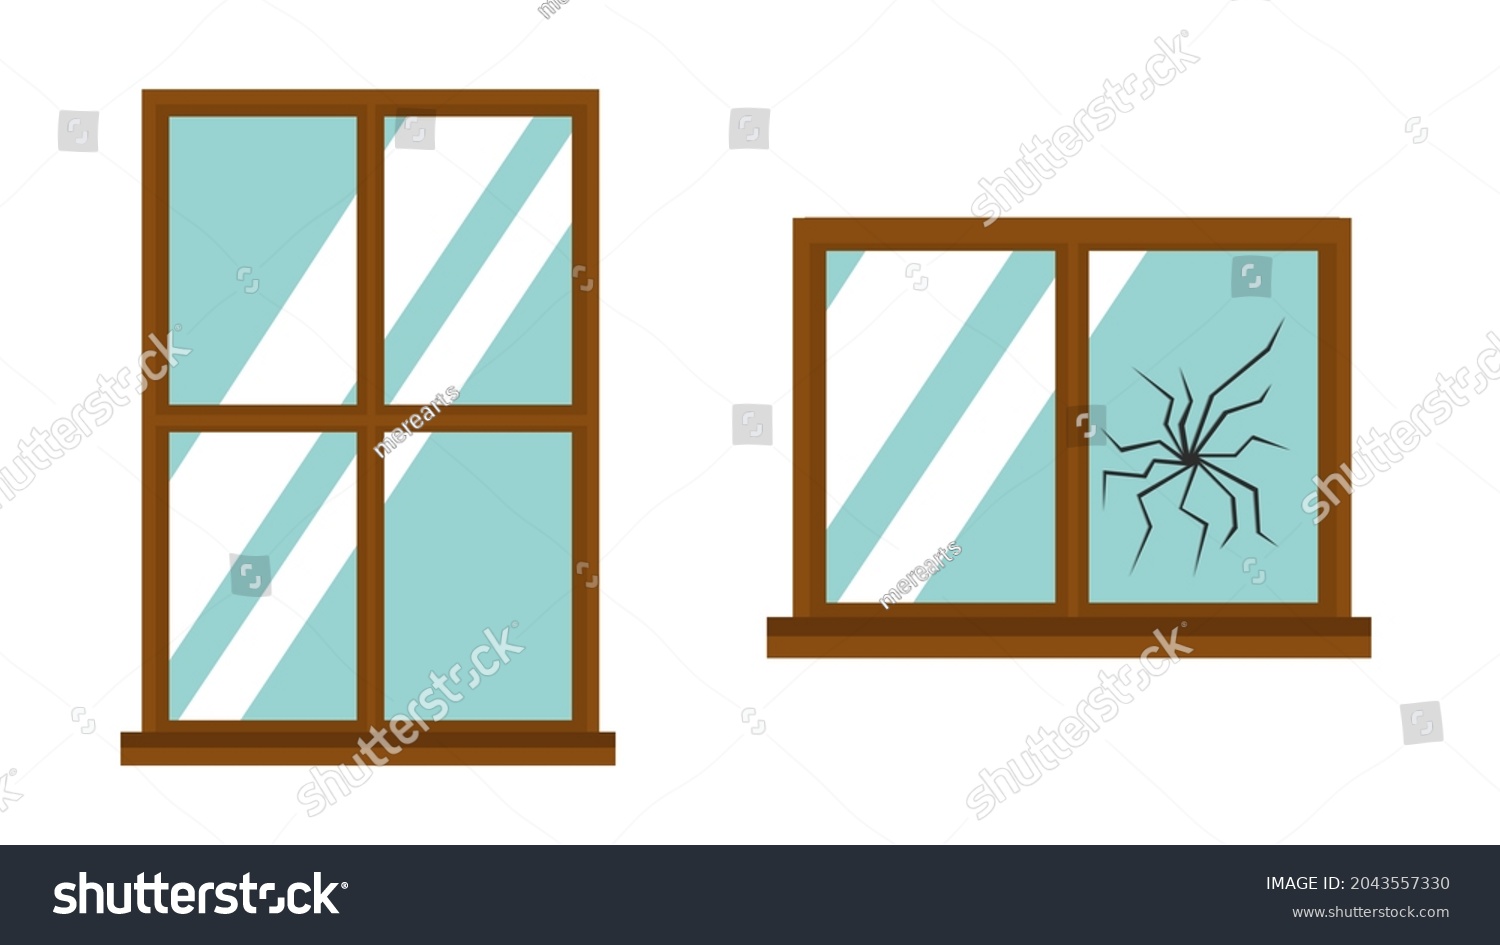 窓ガラス 割れ のイラスト素材 画像 ベクター画像 Shutterstock